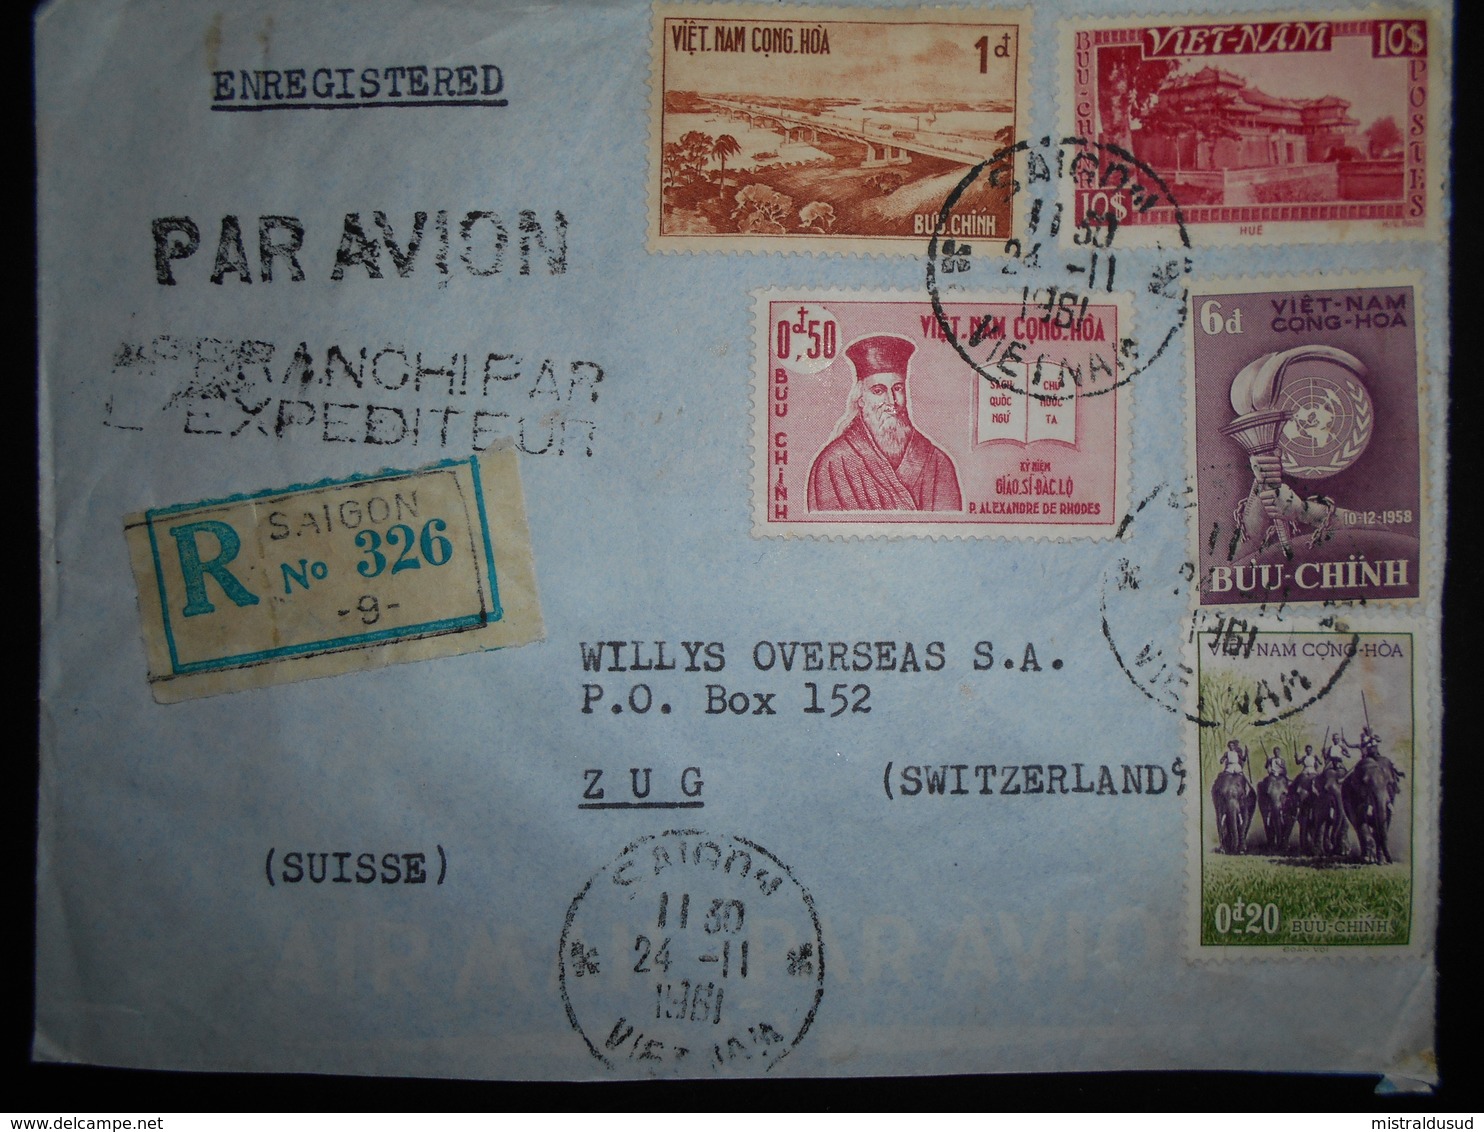 Viet-nam Lettre Recommandee De Saigon 1961 Pour Zug - Vietnam